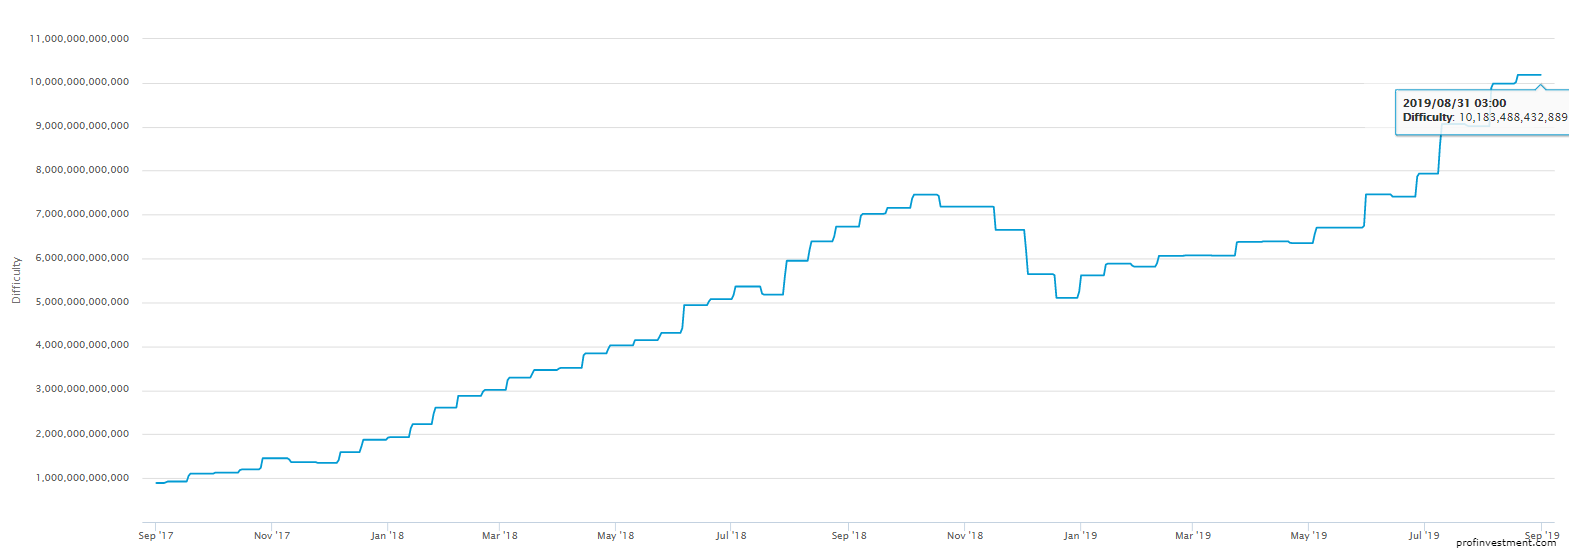 биткоин цена в рублях график за 3 года